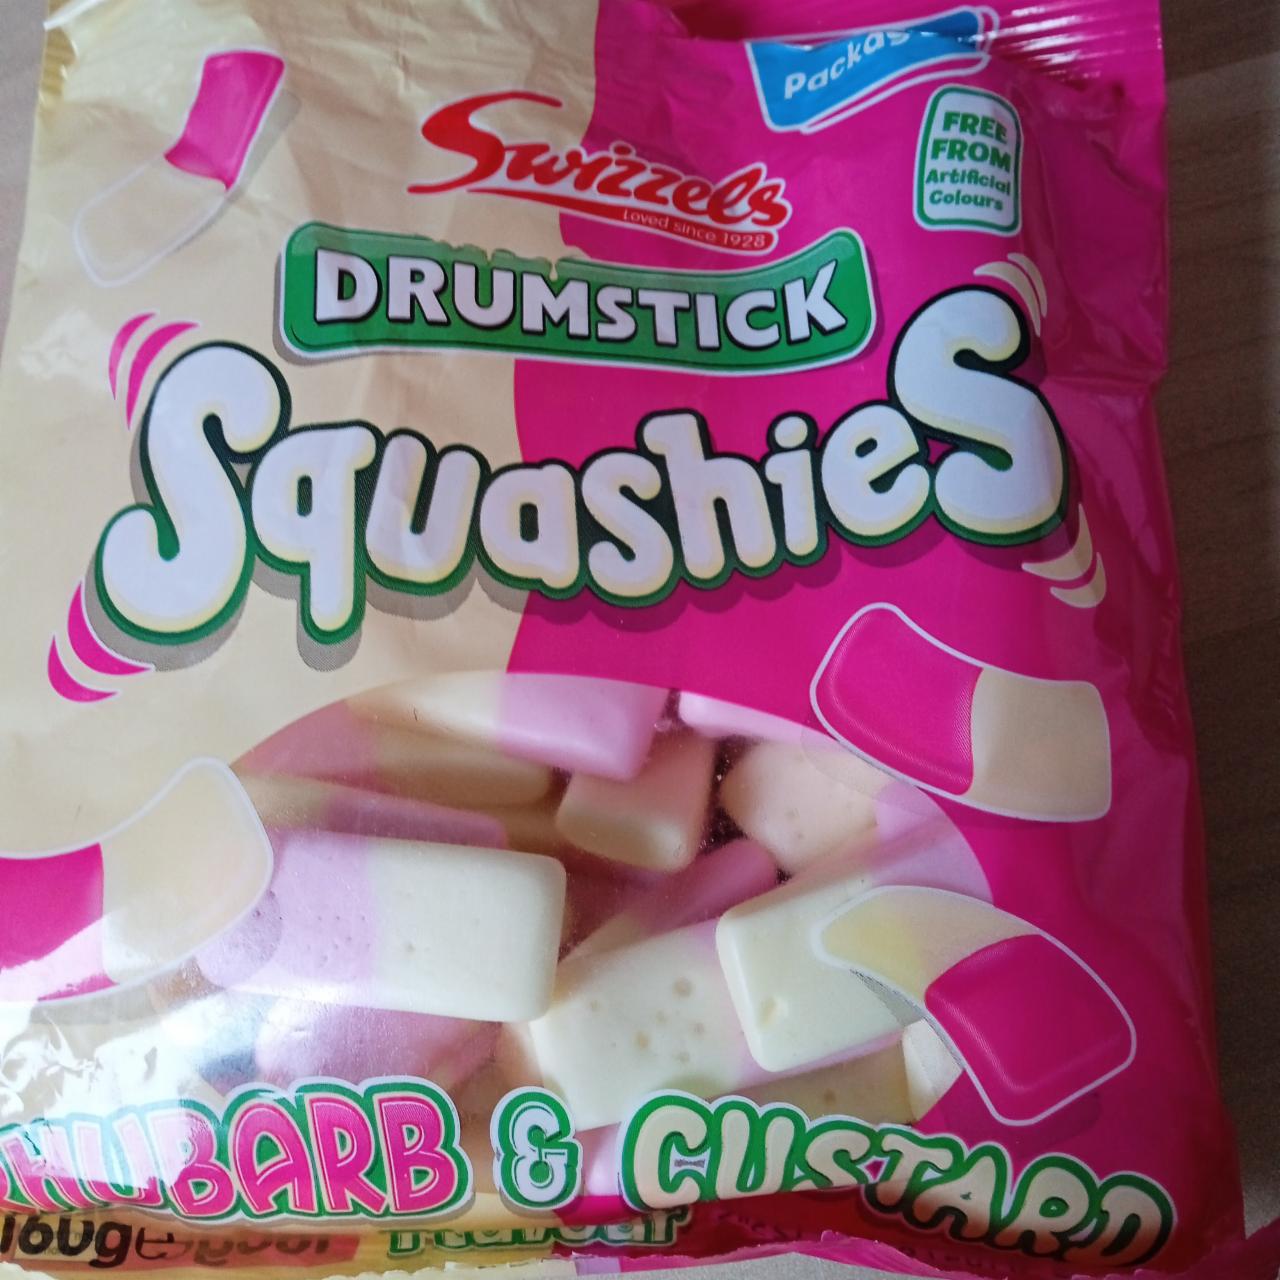 Fotografie - Drumstick Squashies Rhubarb & Custard Flavour Swizzels